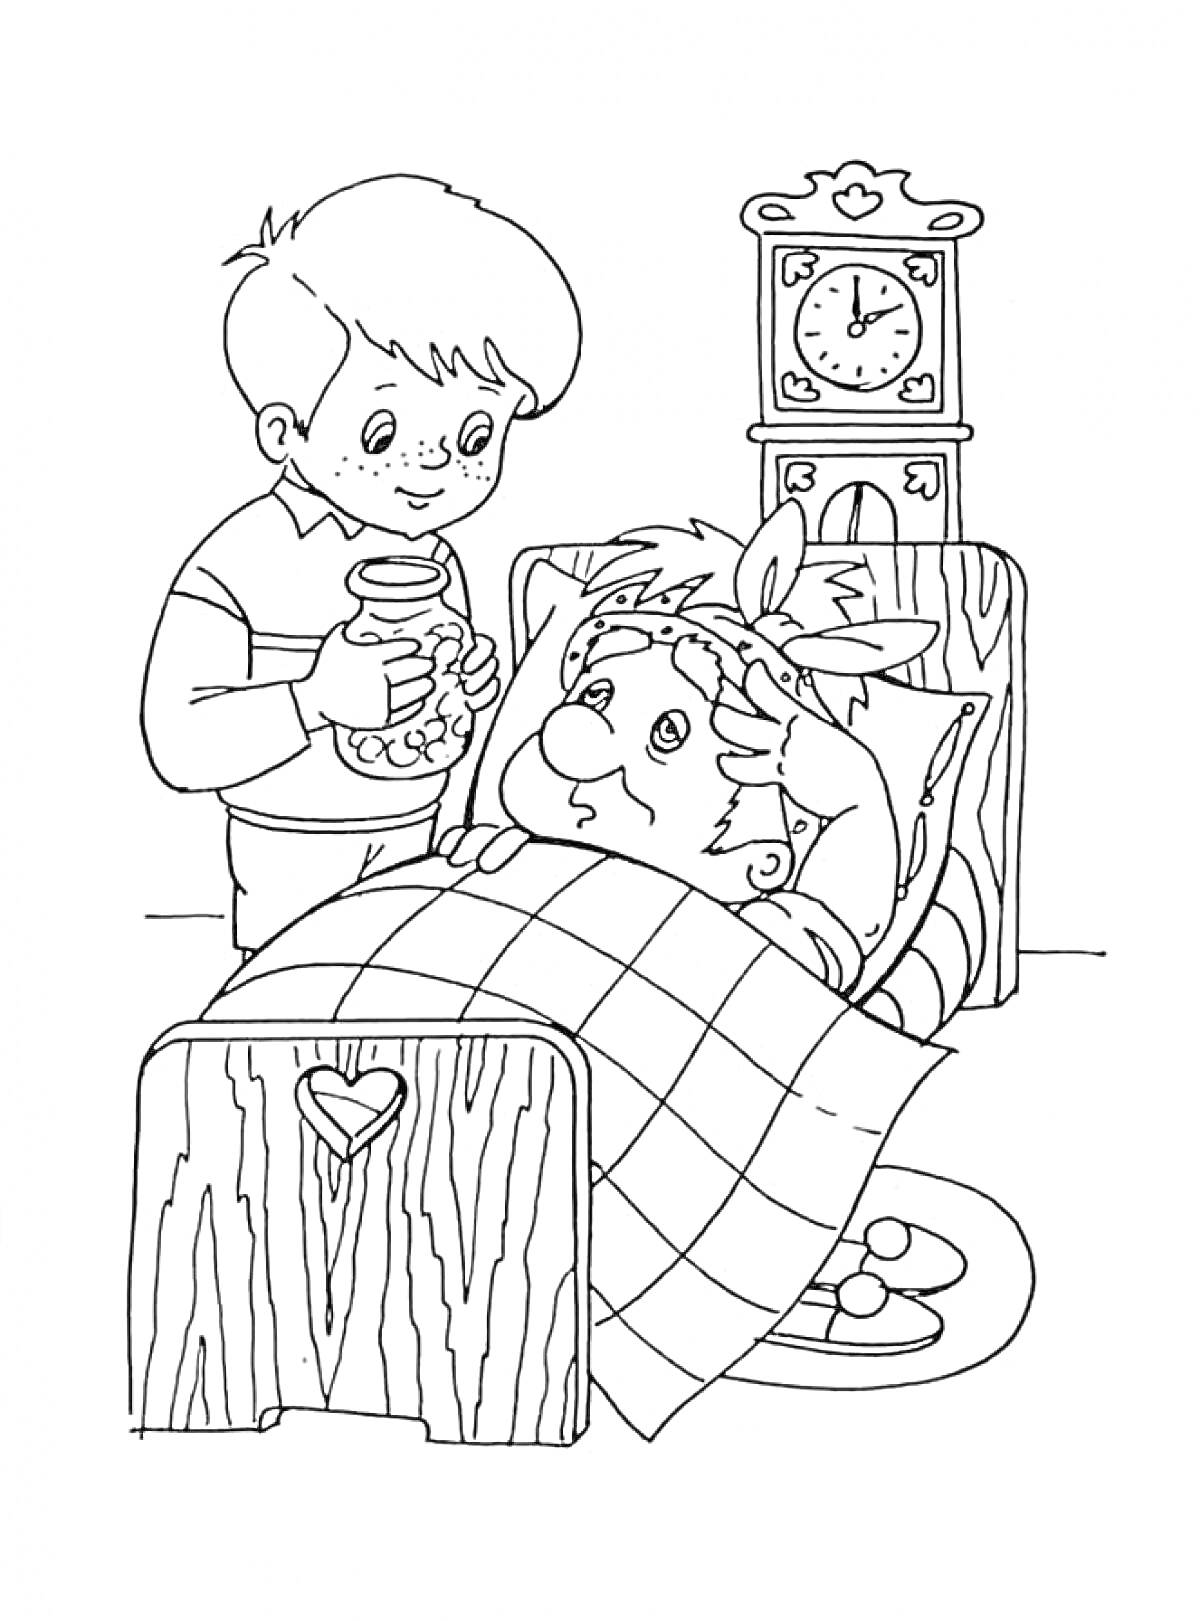 Маленький мальчик дает банку с вареньем Карлсону, который лежит в постели с градусником на голове, рядом стоят большие часы